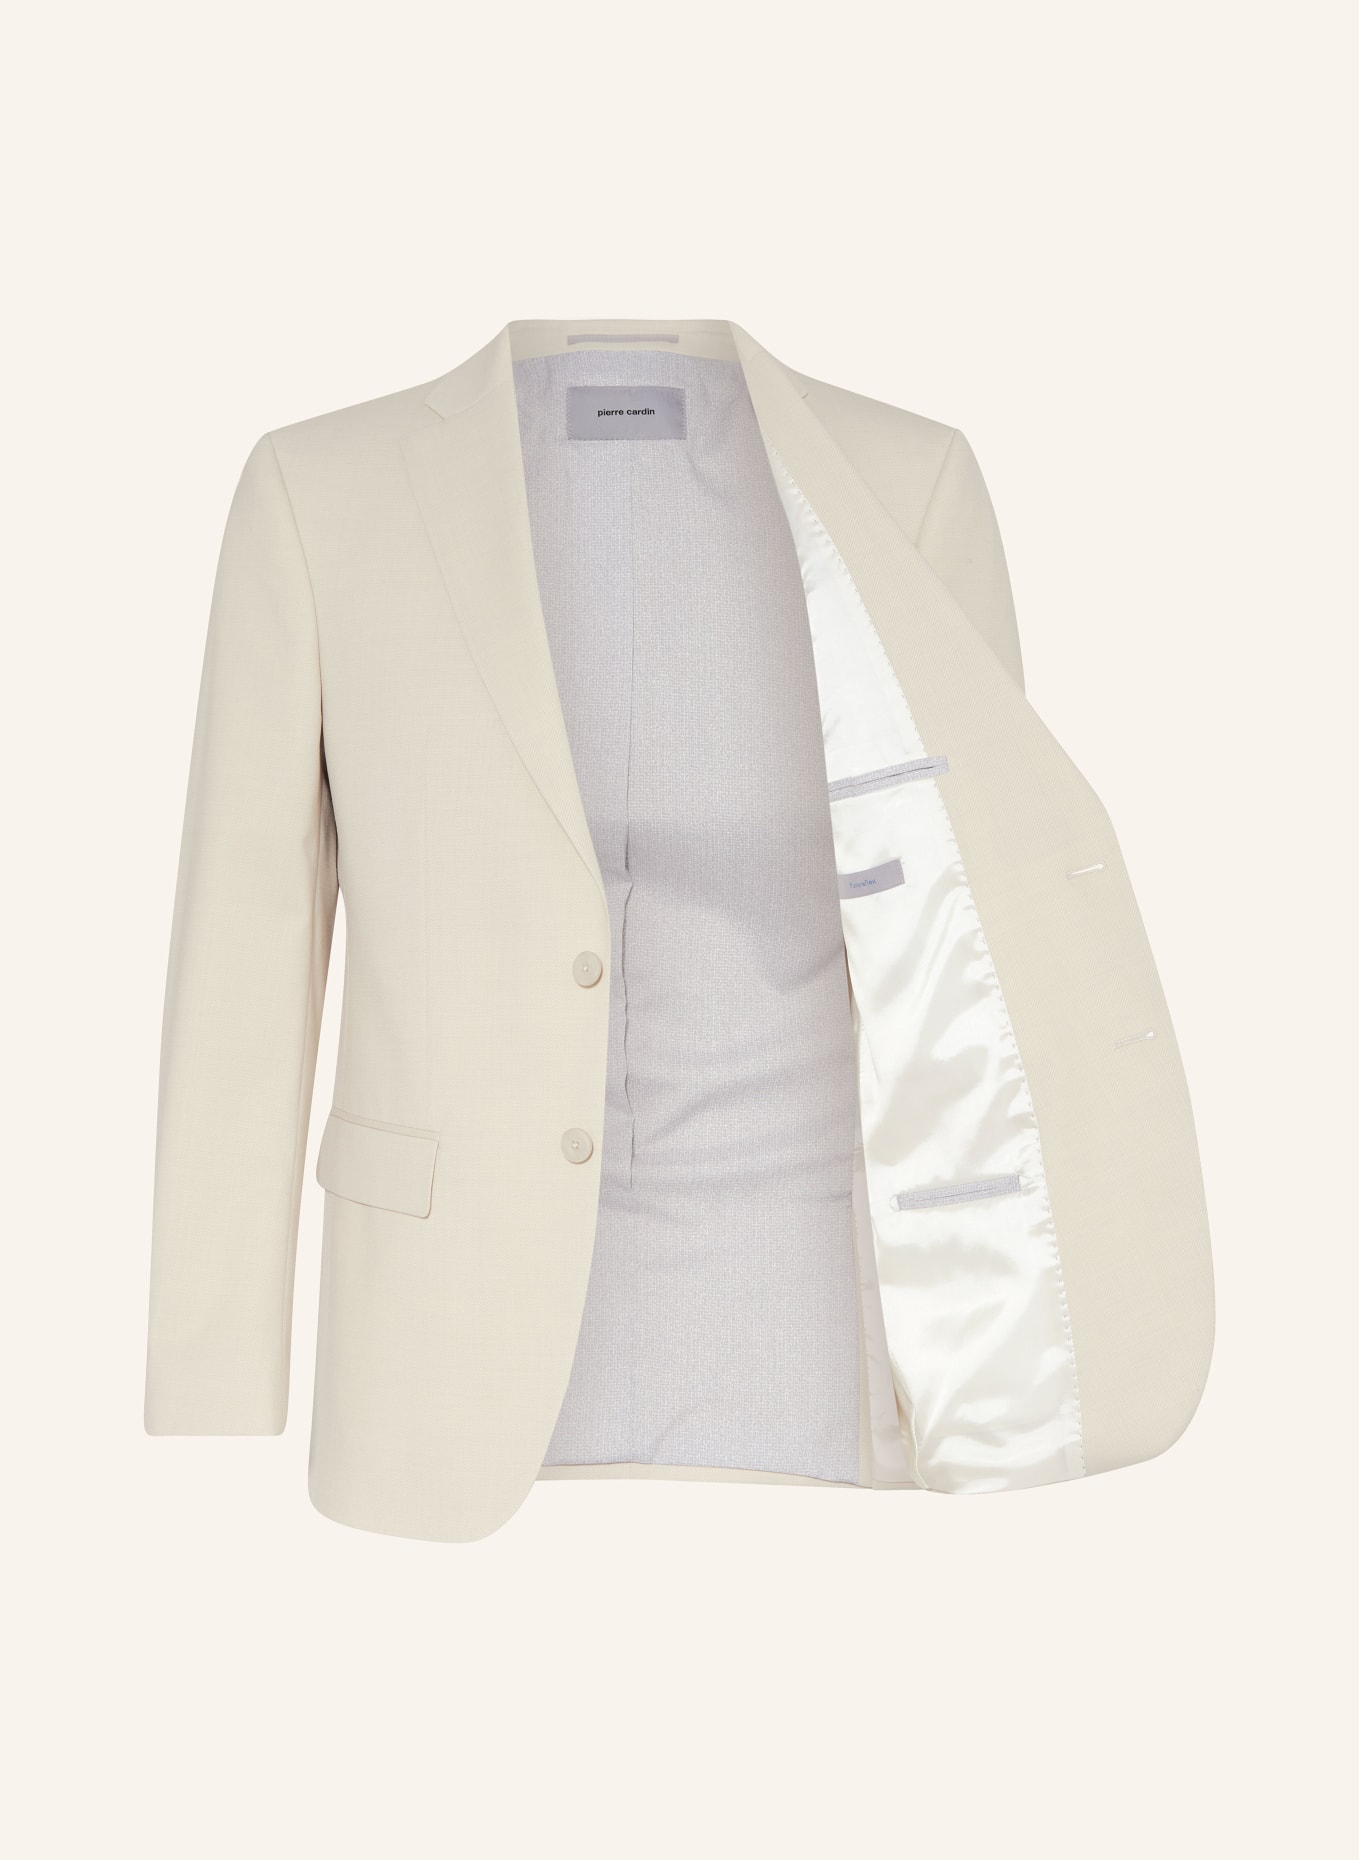 pierre cardin Suit jacket GRANT Regular Fit, Color: 1011 Vapor (Image 4)